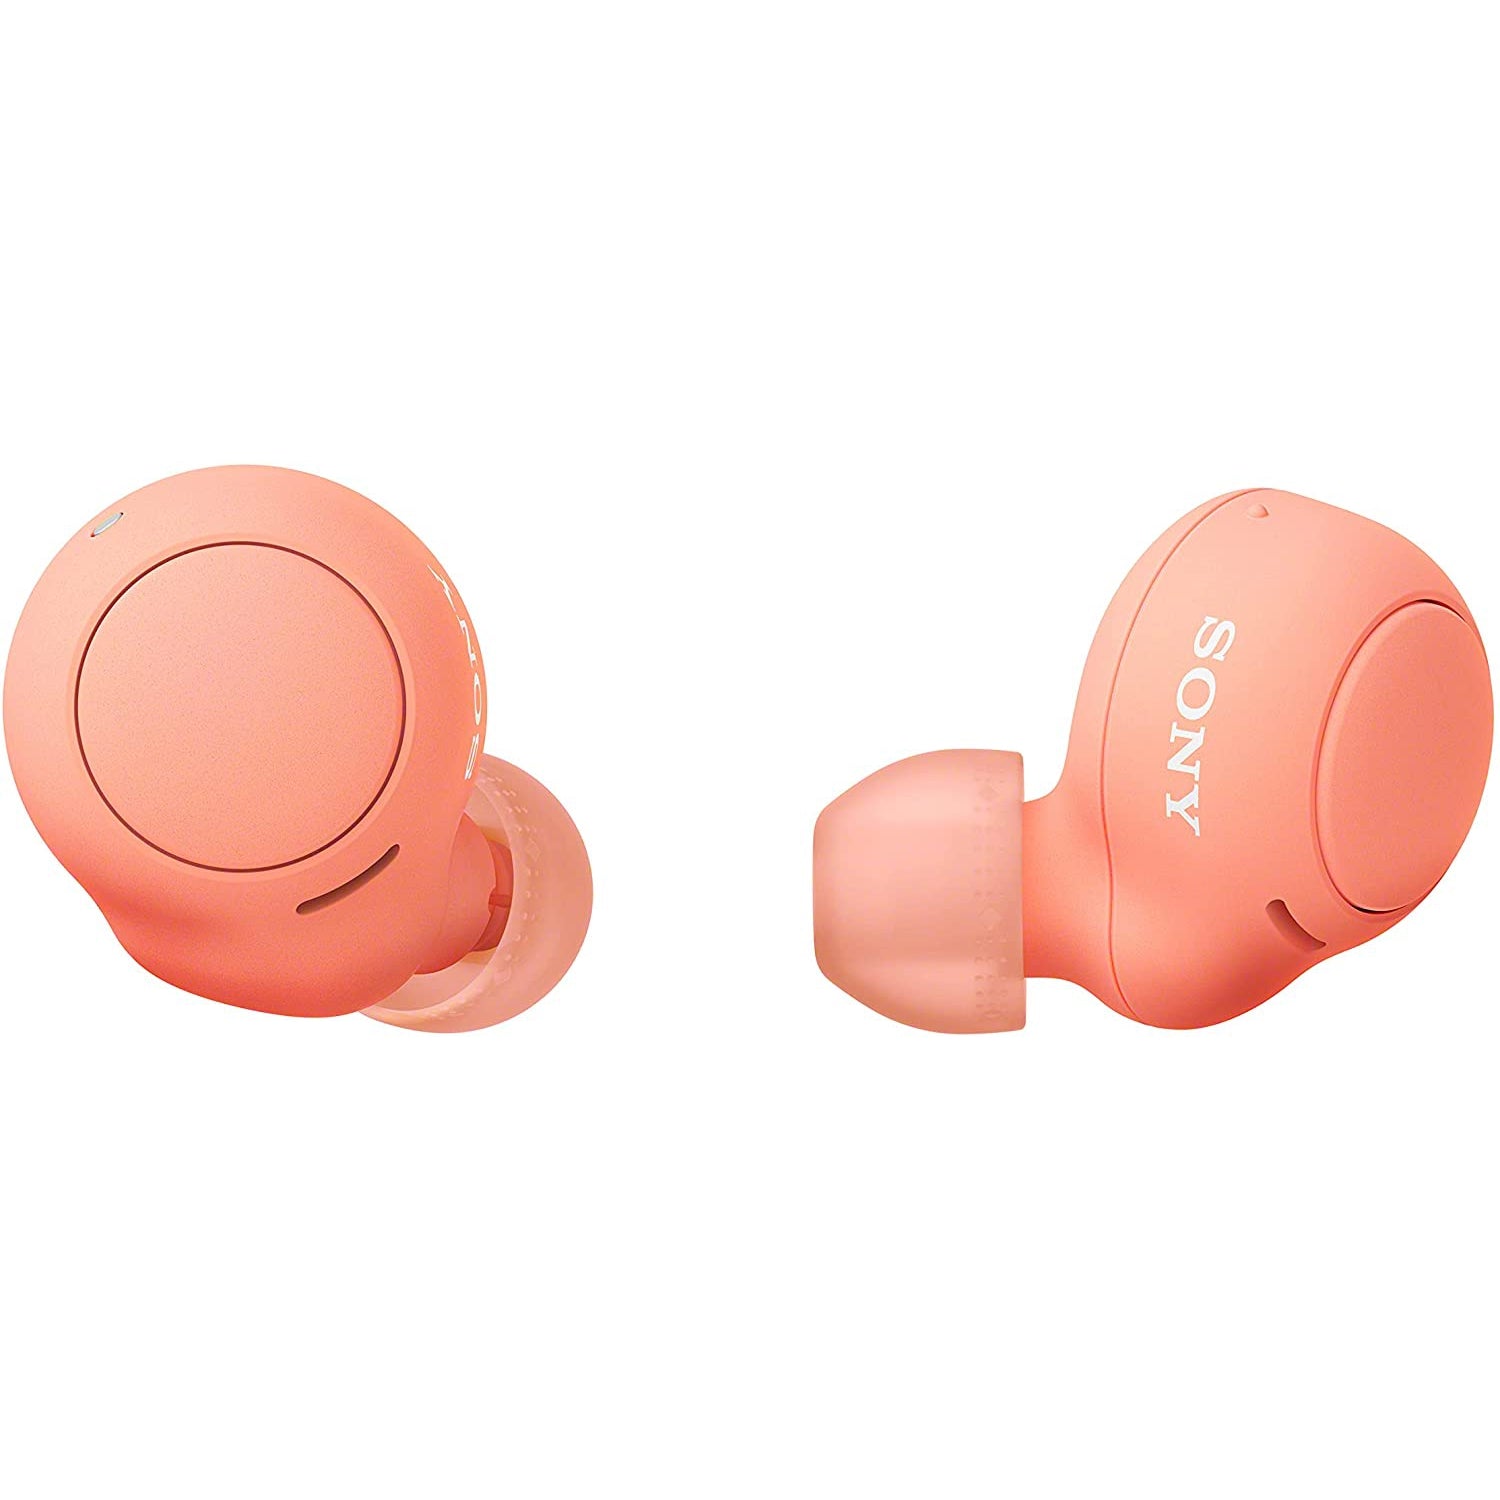 Sony WF-C500 Wireless Earbuds - Orange - Refurbished Excellent